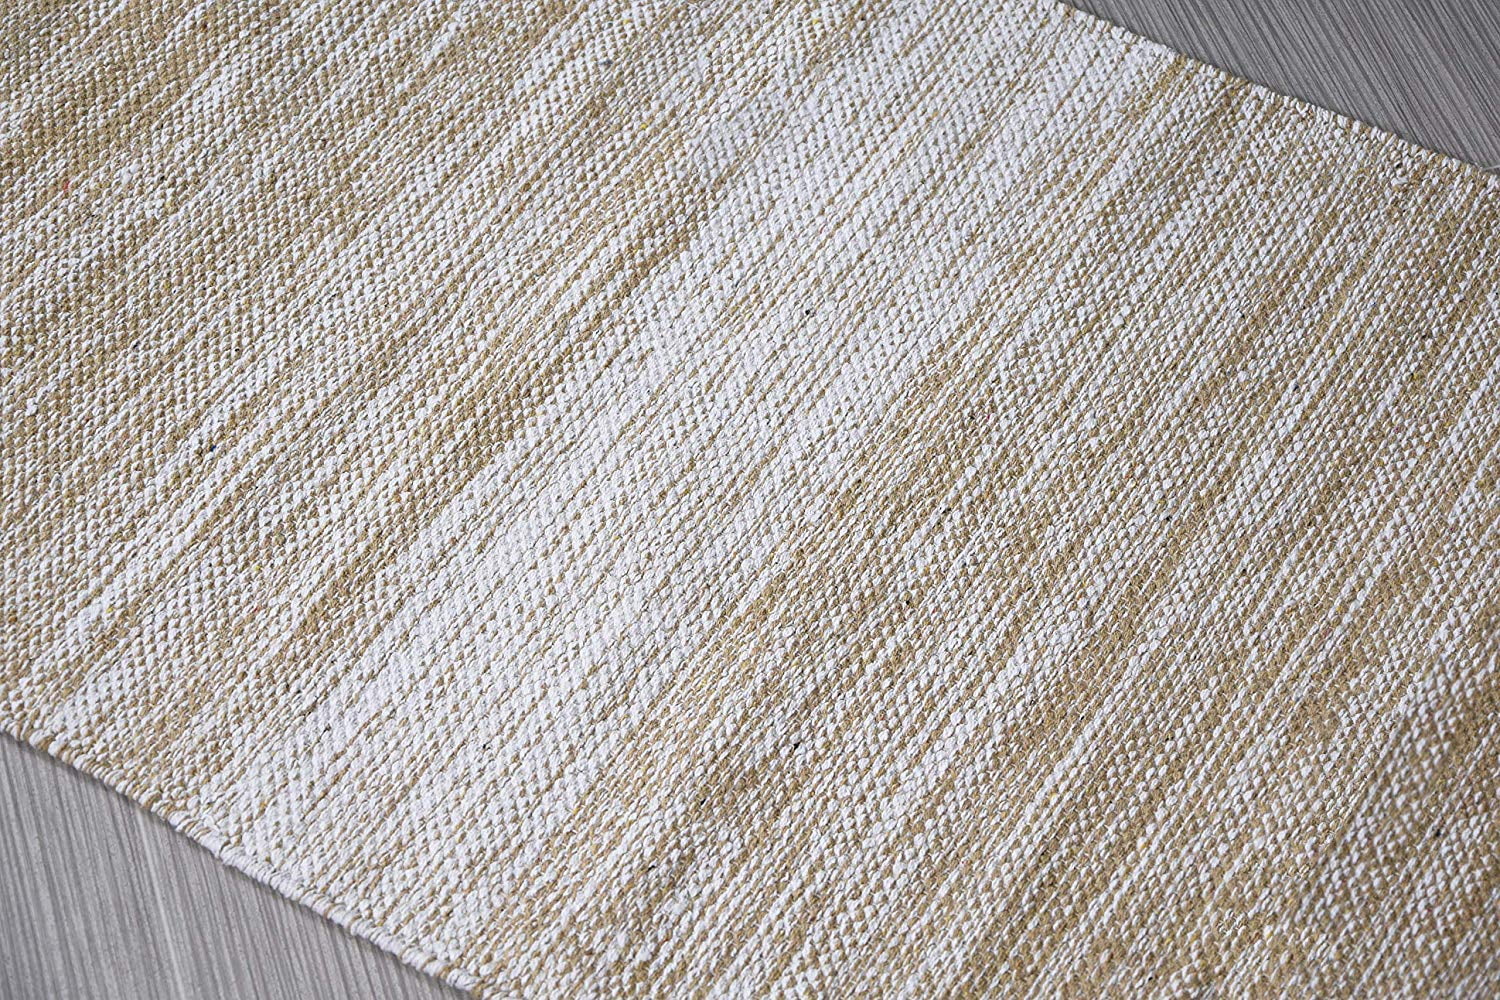 ALAZA Gecko Lizard Area Rug 20 x 31 Door Mat for Living Room Bedroom Kitchen Bathroom Decorative Lightweight Foam Printed Rug